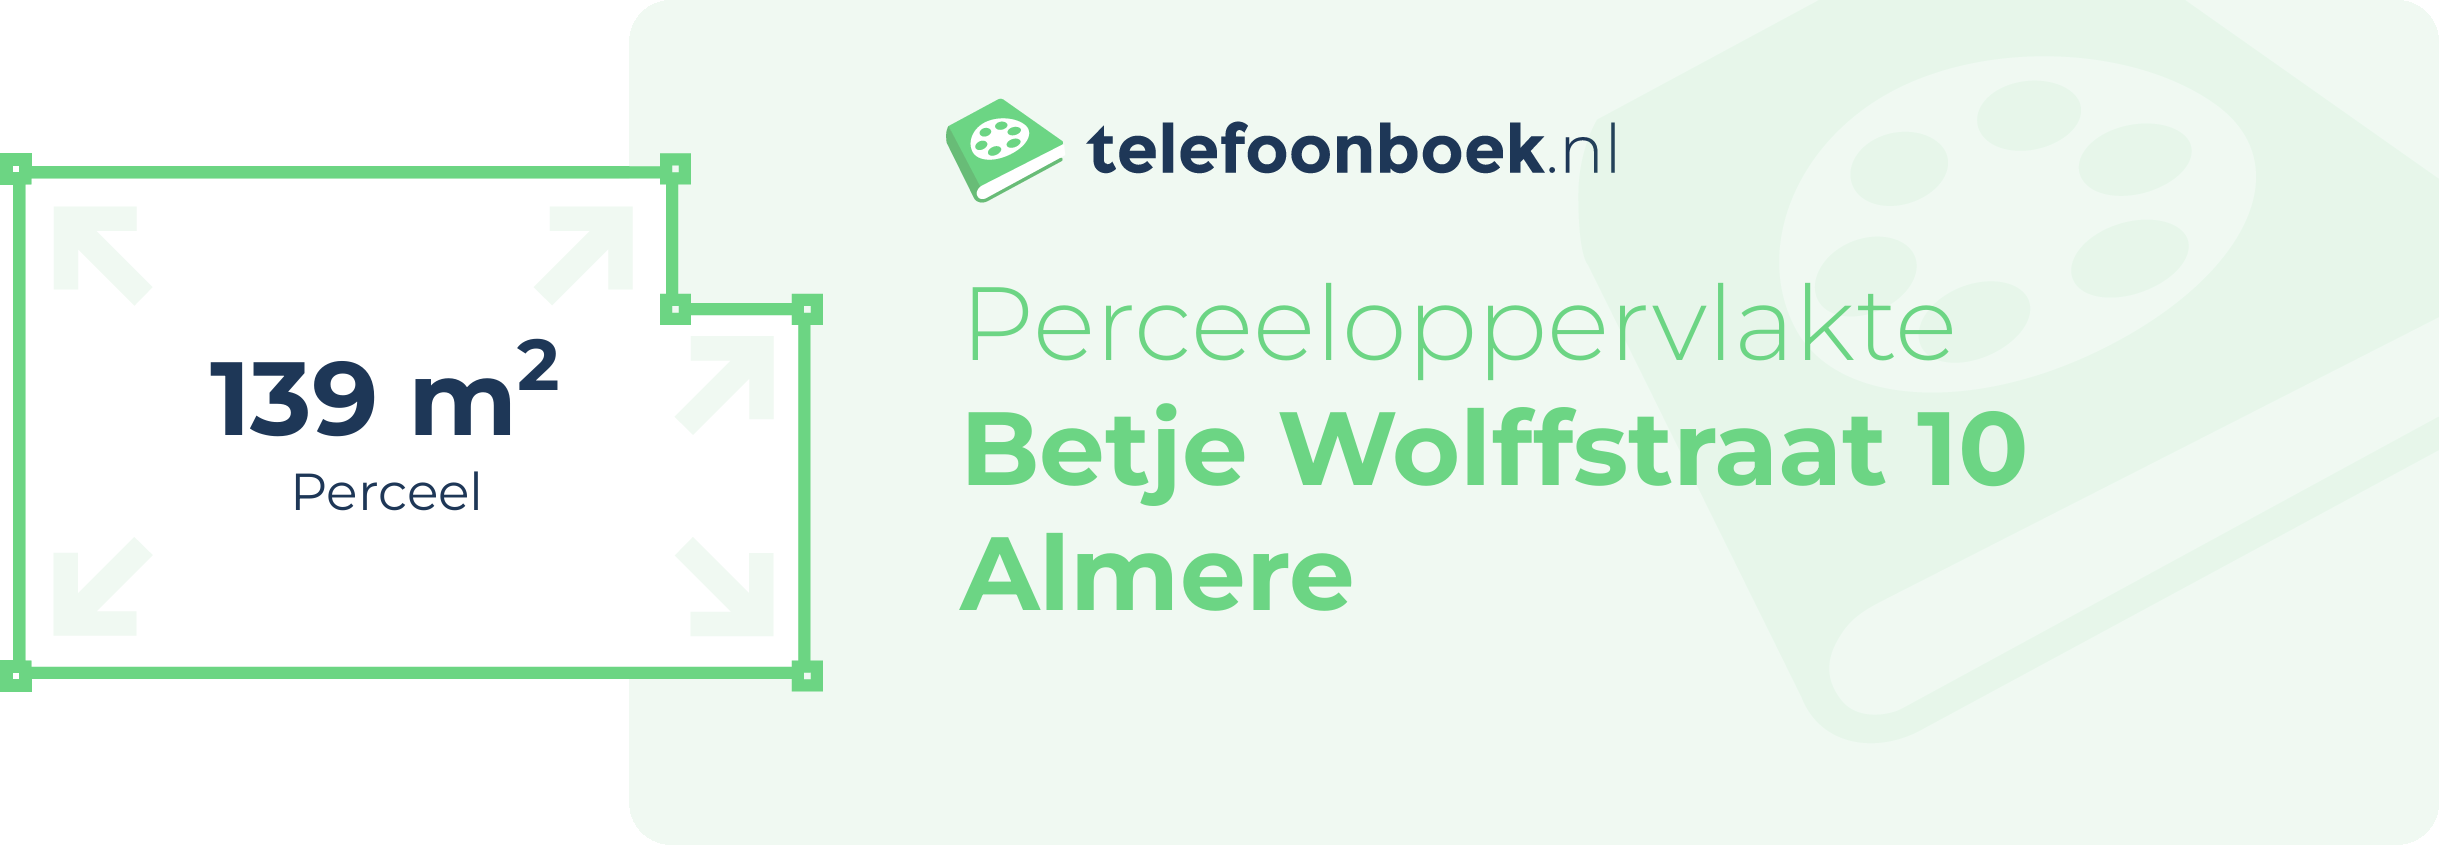 Perceeloppervlakte Betje Wolffstraat 10 Almere